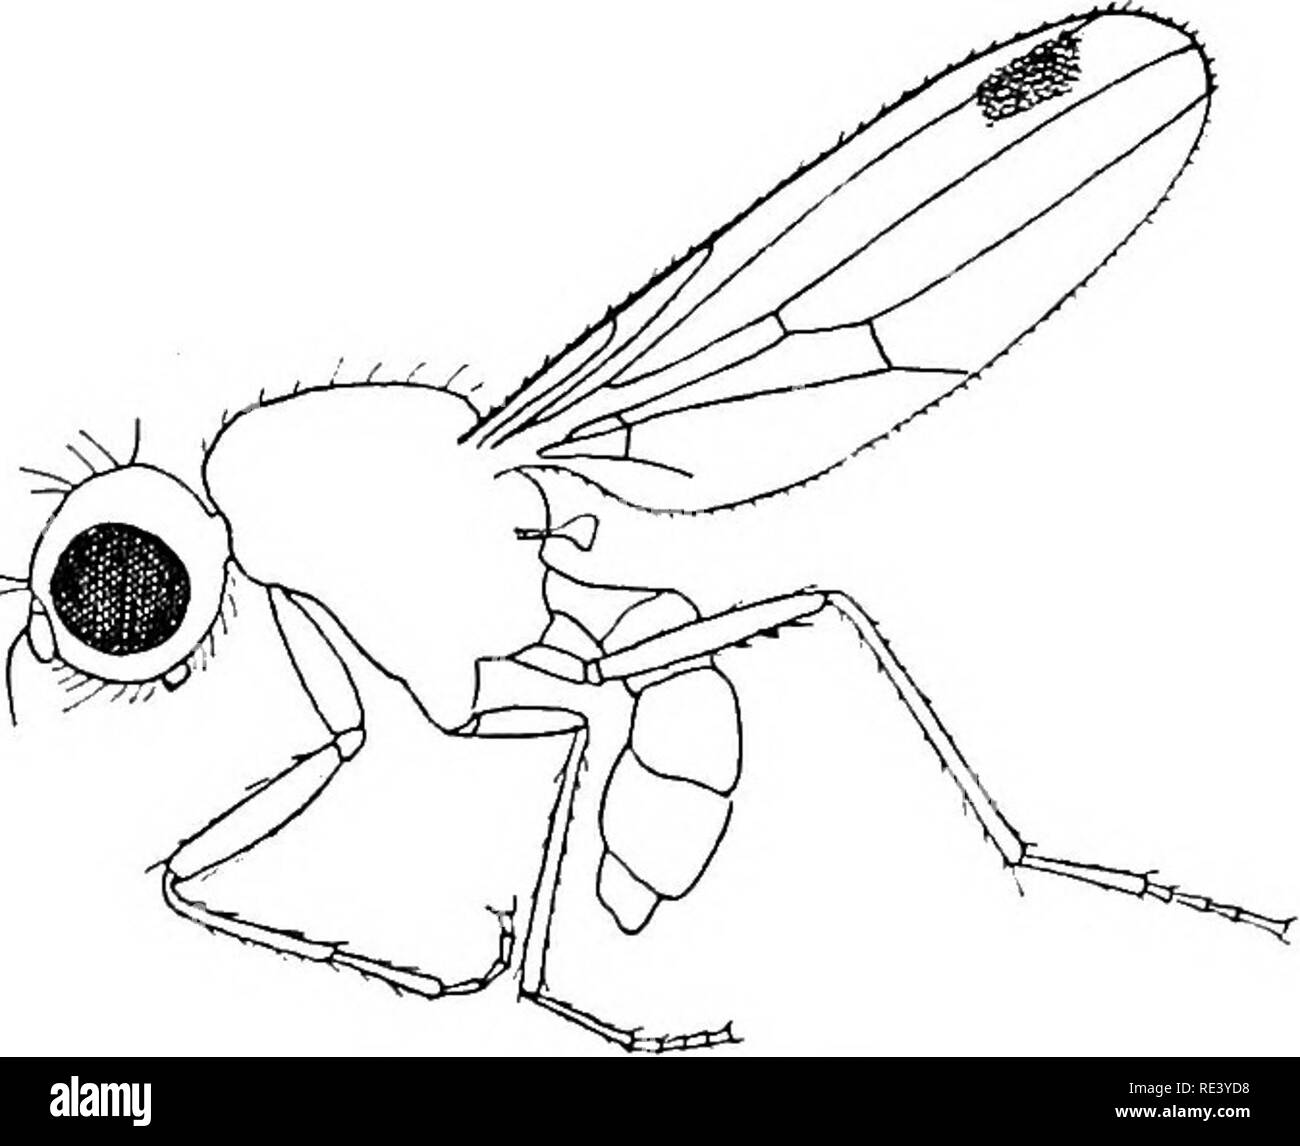 . Entomologie für medizinische Offiziere. Schädlinge und Insekten als Überträger von Krankheiten. Ordnung Diptera: SCHIZOPHORA: Die MUSCOIDEA 147 Blut. Die weibliche Einlagen ihre Eier auf Bienen und Wespen, in dem die larvse Wenn geschlüpft parasitäre geworden. Von einigen Autoren diese Familie ist mit der aschiza enthalten. Familie SepsidcB (Abb. 51) (o-^&gt;/r (y=Fäulnis). Kleine, meist schwarze Fliegen, mit rundem Kopf und eingeengt" Taille." Die Vene oft undeutlich ist, und der Flügel hat gewöhnlich einen dunklen Fleck, oder Flecken, in der Nähe der Spitze. Die Sepsidce sind schnell im Flug, und mit großer Aktivität ausführen; Sie ma Stockfoto